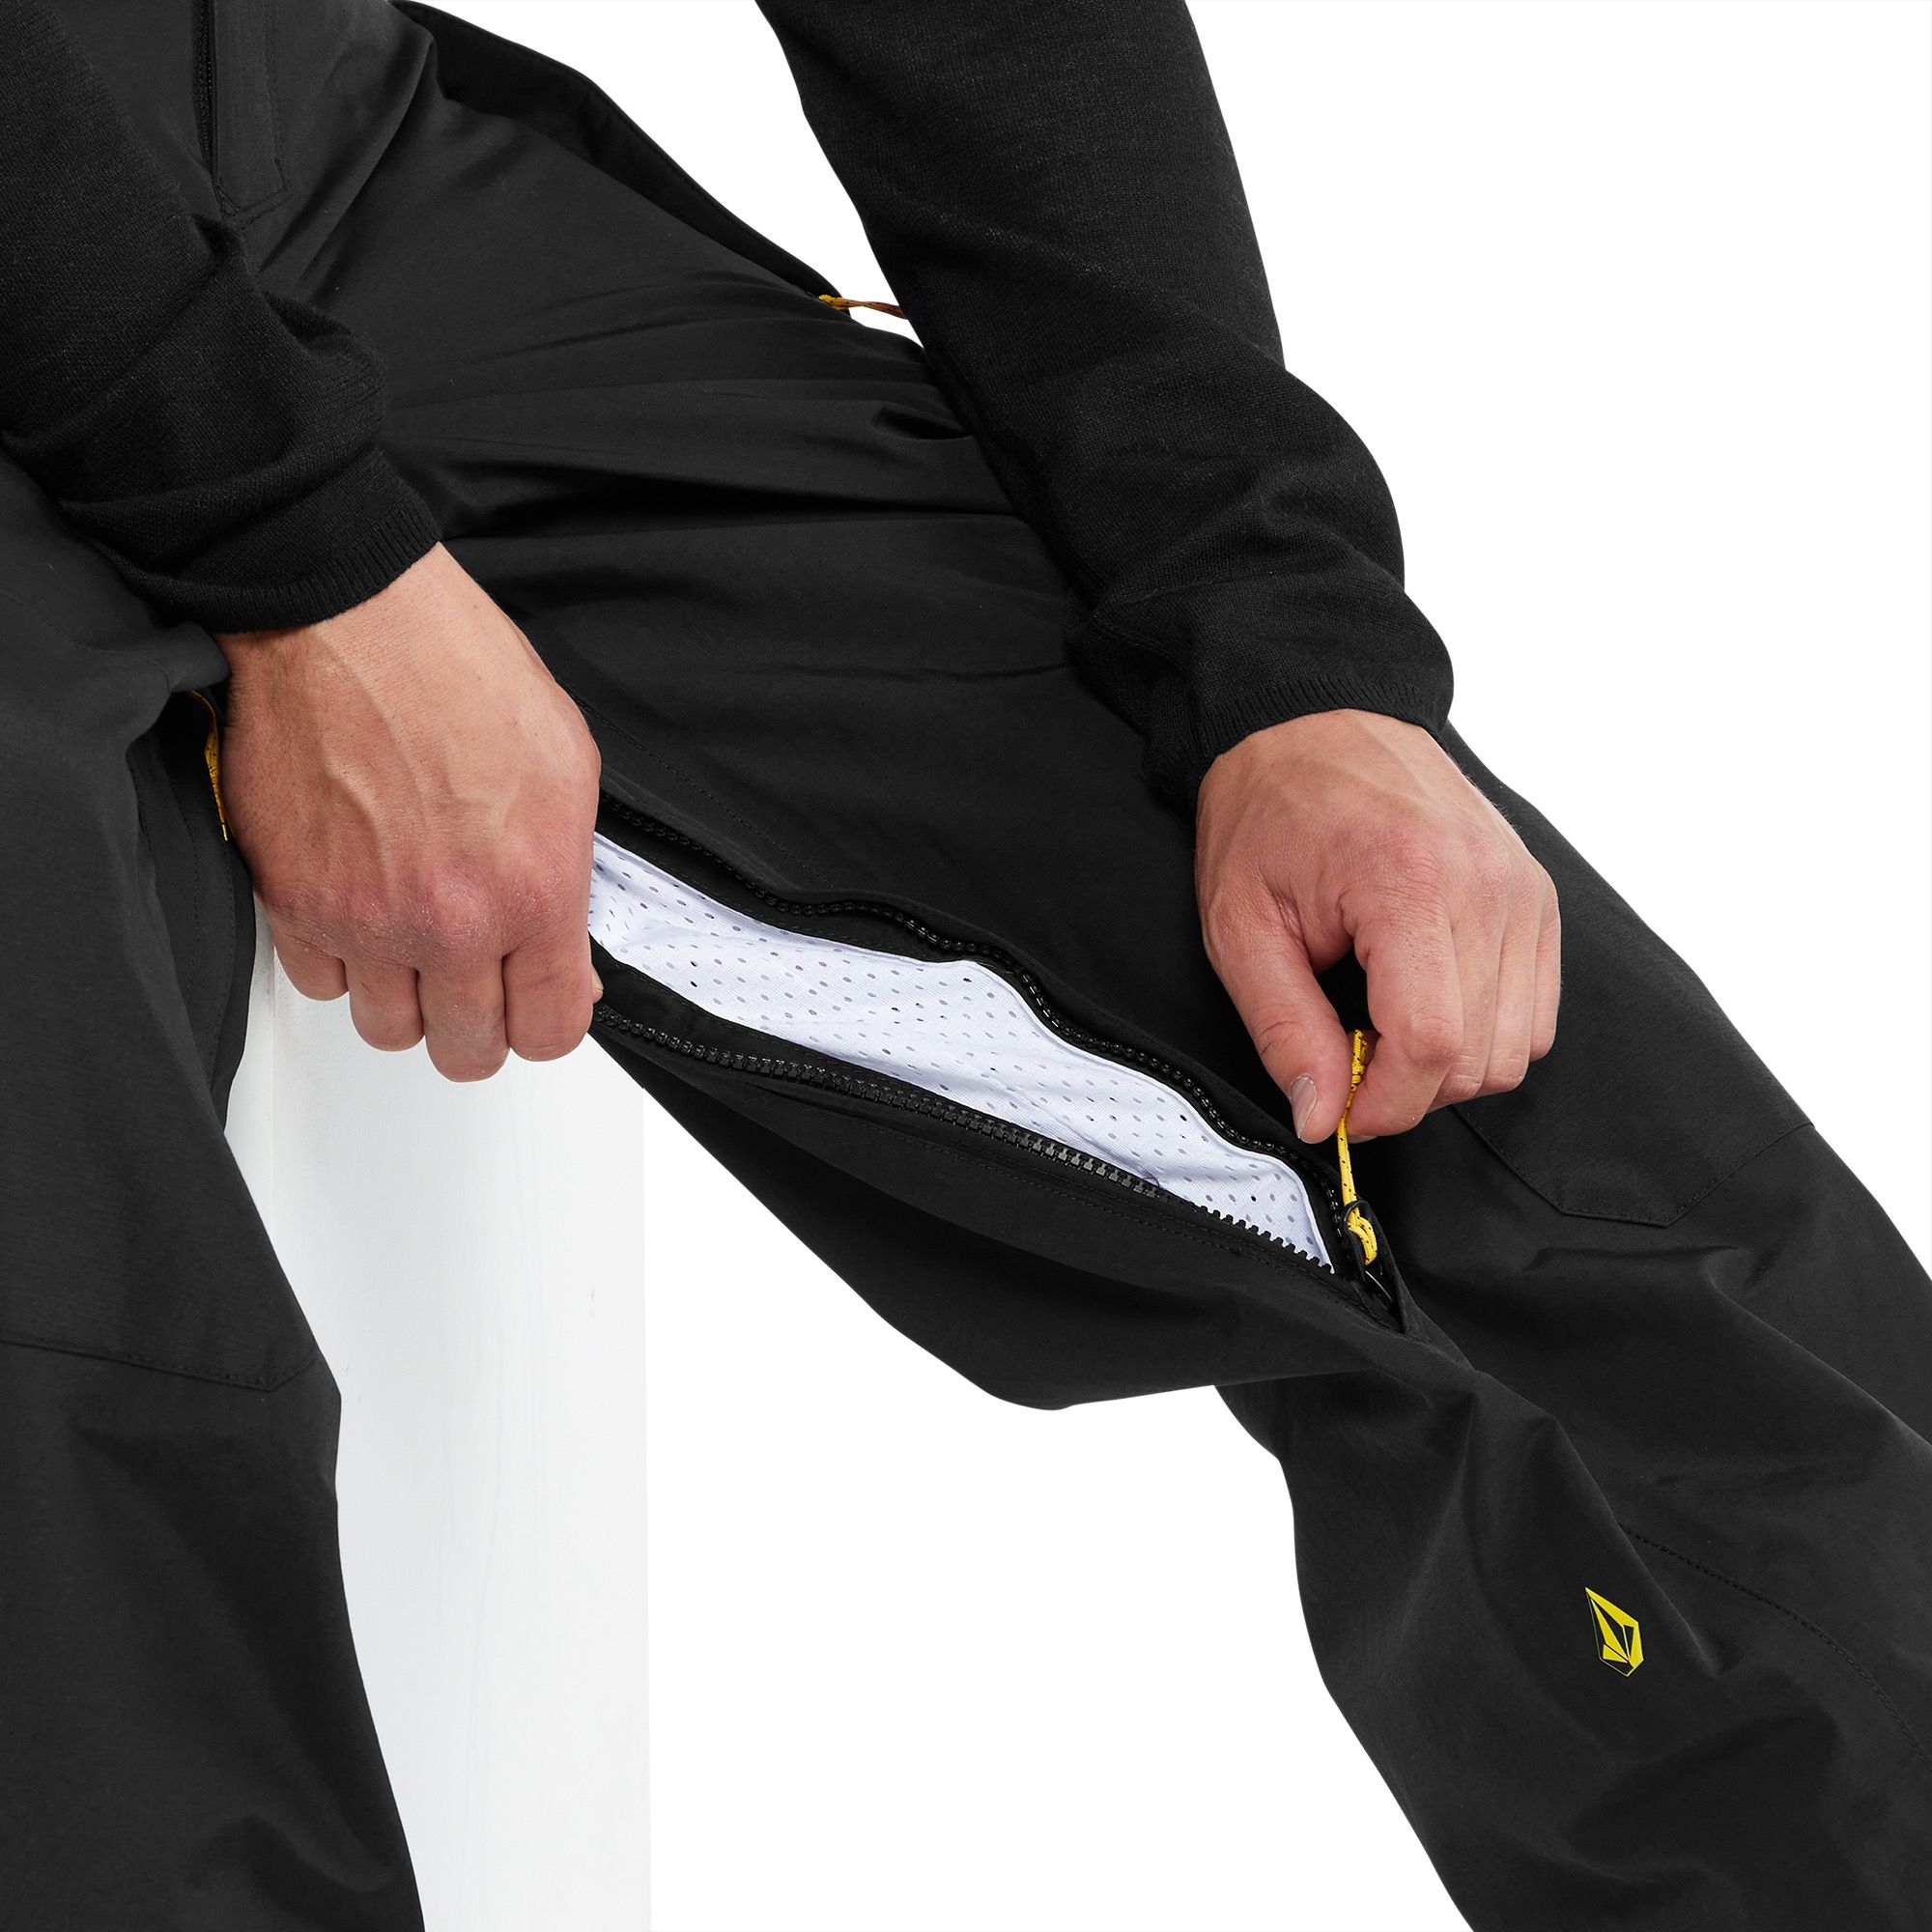 Pantalon de Ski Longo Gore-Tex Pant - Black